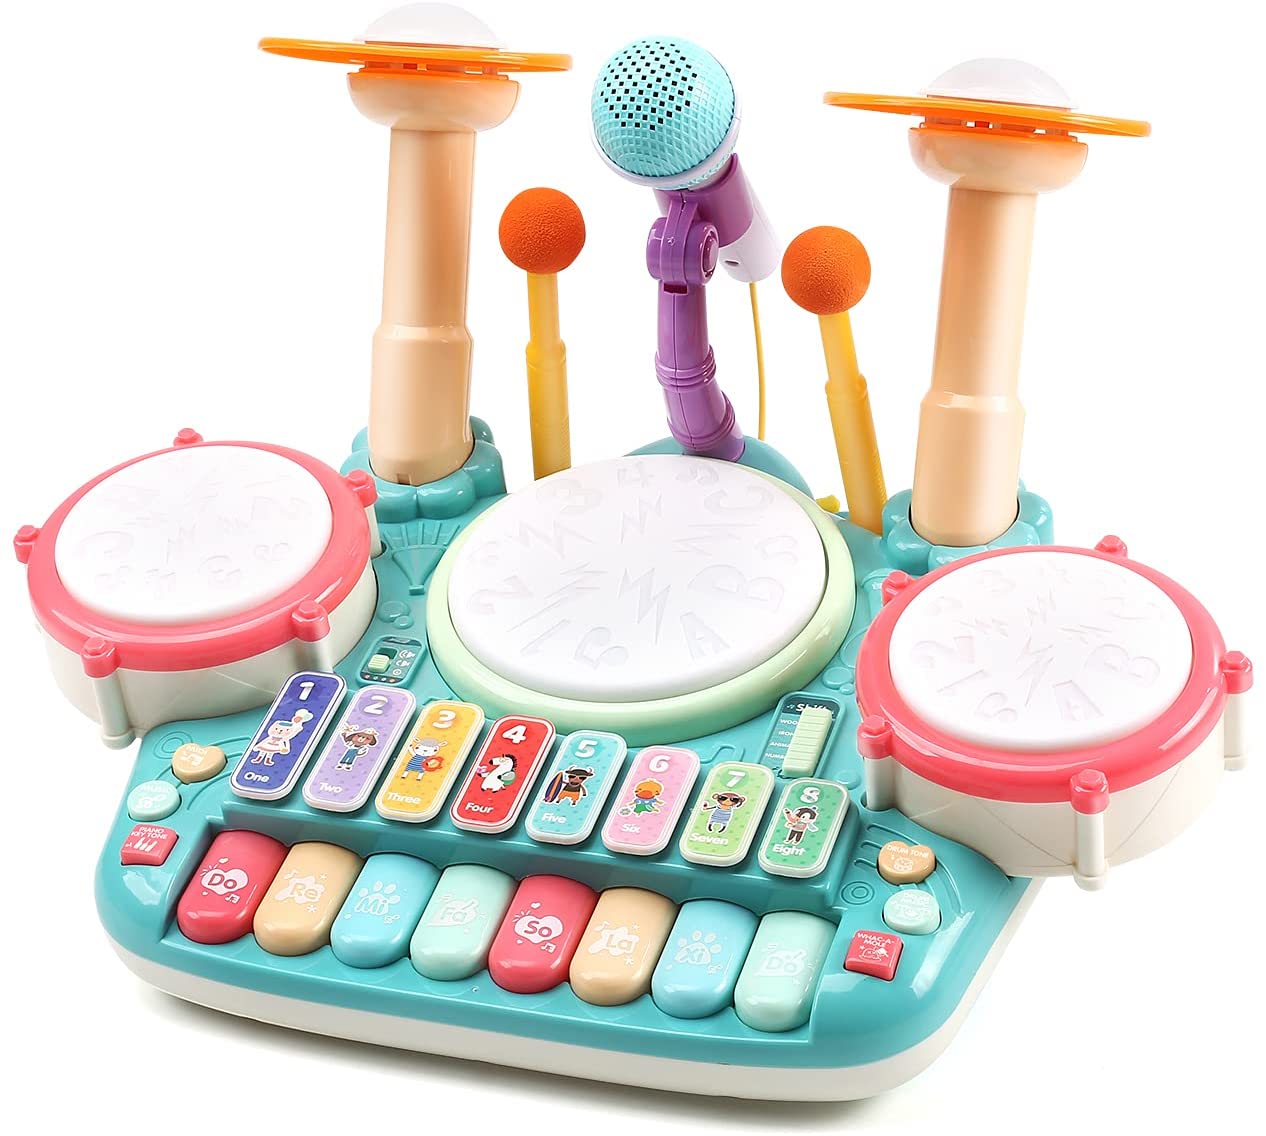 【5in1楽器玩具】この多機能の楽器玩具には、ドラムパッド、シンバル、ドラムスティック、マイクなどが付属し、3つの主要な楽器：ピアノキーボード、ビートドラムセット、電子木琴があります。更に、ピアノの4モード、木琴の4モード、ドラムの3モードとキーボードの4つの演奏方法があります。 【楽しくモード】1.電子木琴を演奏する4つの方法：グロッケンシュピールモード、木琴モード、動物モード（7匹の動物の音）、数字モード：1〜8の数字の発音 2.ビートドラムセットを演奏する3つの方法：演奏モード（ジャズドラムとジャンベ）、音楽モード（ドラムソングとビート）、モグラたたき：難易度の異なる5レベルの面白いモグラたたきゲーム。 【子供ための音楽教育】小さなミュージシャンのための完璧な学習音楽おもちゃになります。子供の音楽への興味を高め、子供の目と手の協調を強化し、ドラムを叩いてピアノキーボードを演奏することにより、細かい運動能力と聴覚感覚を発達させます。 【高品質】滑らかな表面を持つ高品質のプラスチック素材で作られているので、子供にとって安全の心配がないおもちゃです。誕生日、ハロウィーン、感謝祭、子供のための新年としての素晴らしいクリスマスギフトのアイデアになります。 【規格】本体のサイズ：43*33*28cm 梱包ケースのサイズ：43.3*27.5*14.5cm重量：1500G バッテリー：1.5VAA*4 （別売り）贈り物、お誕生日、クリスマスなどのプレゼントにピッタリ！商品に不具合がある場合、お気軽に弊店にご連絡ください。日本語サービスを提供します。